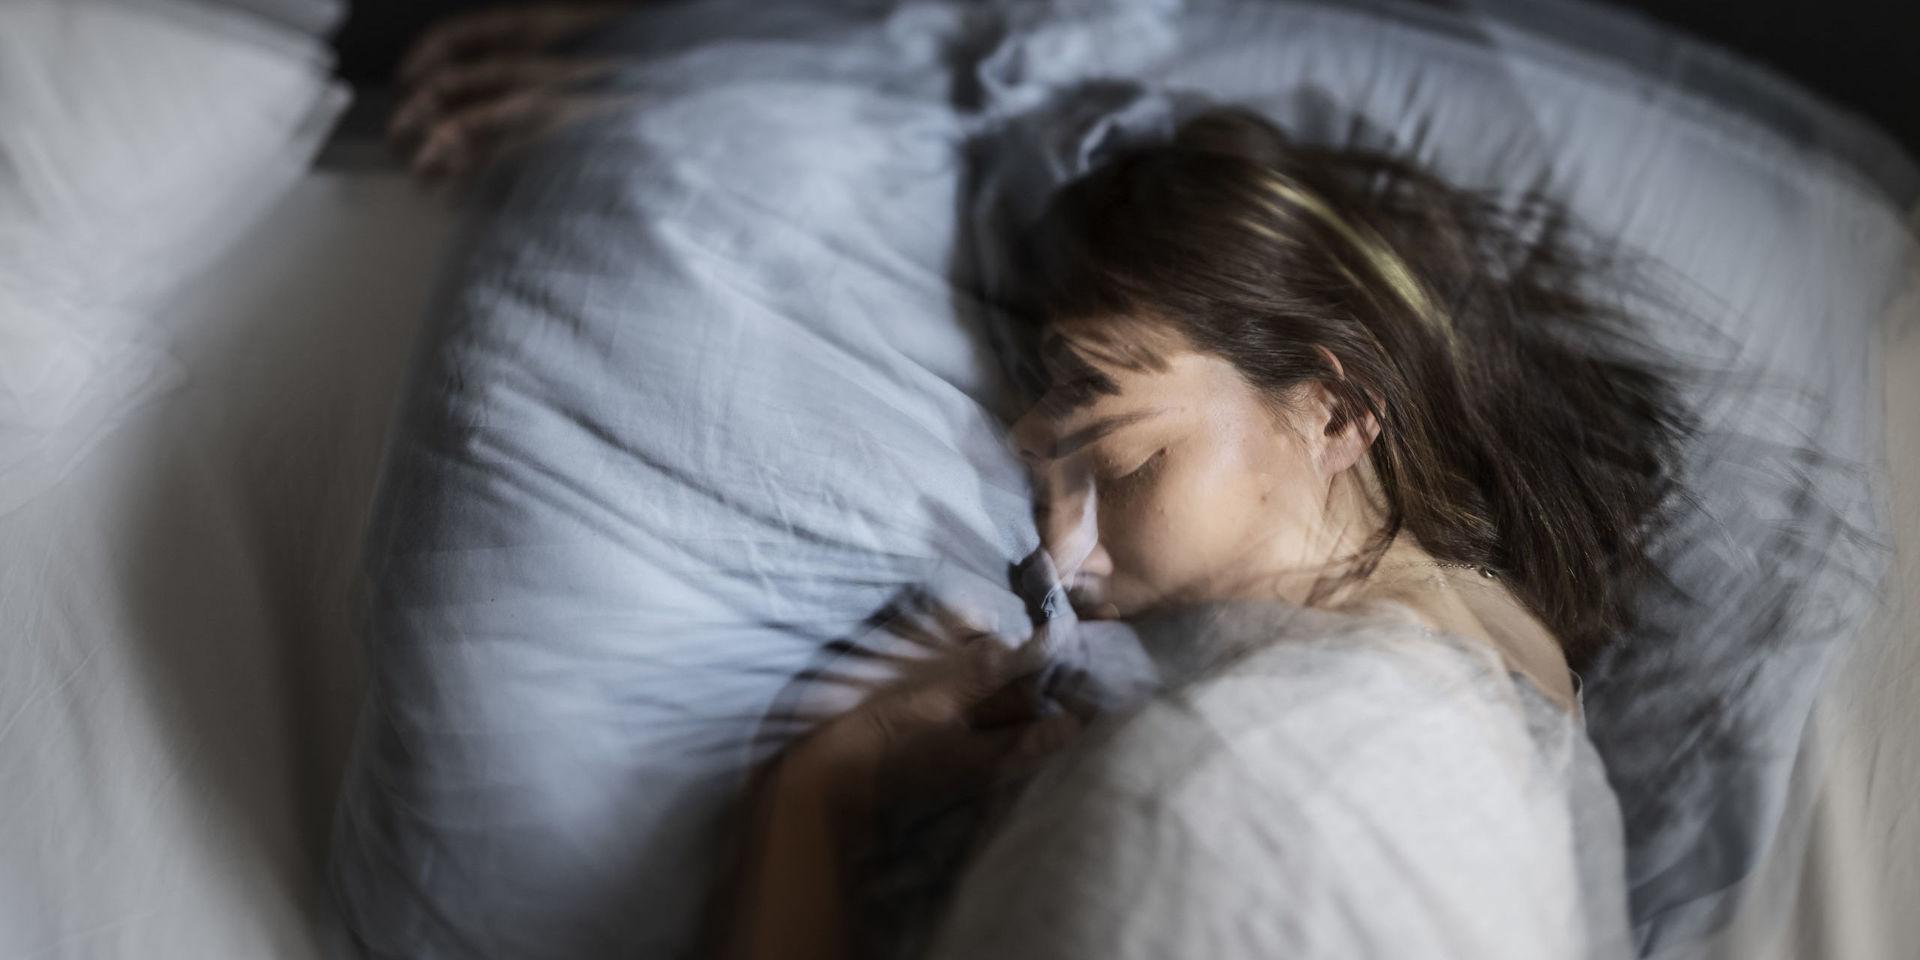 De vanligaste orsakerna till sömnproblem är stress och konstiga arbetstider, enligt Torbjörn Åkerstedt vid Karolinska institutet. Tyngdtäcken påstås hjälpa mot sömnbesvär. Arkivbild.